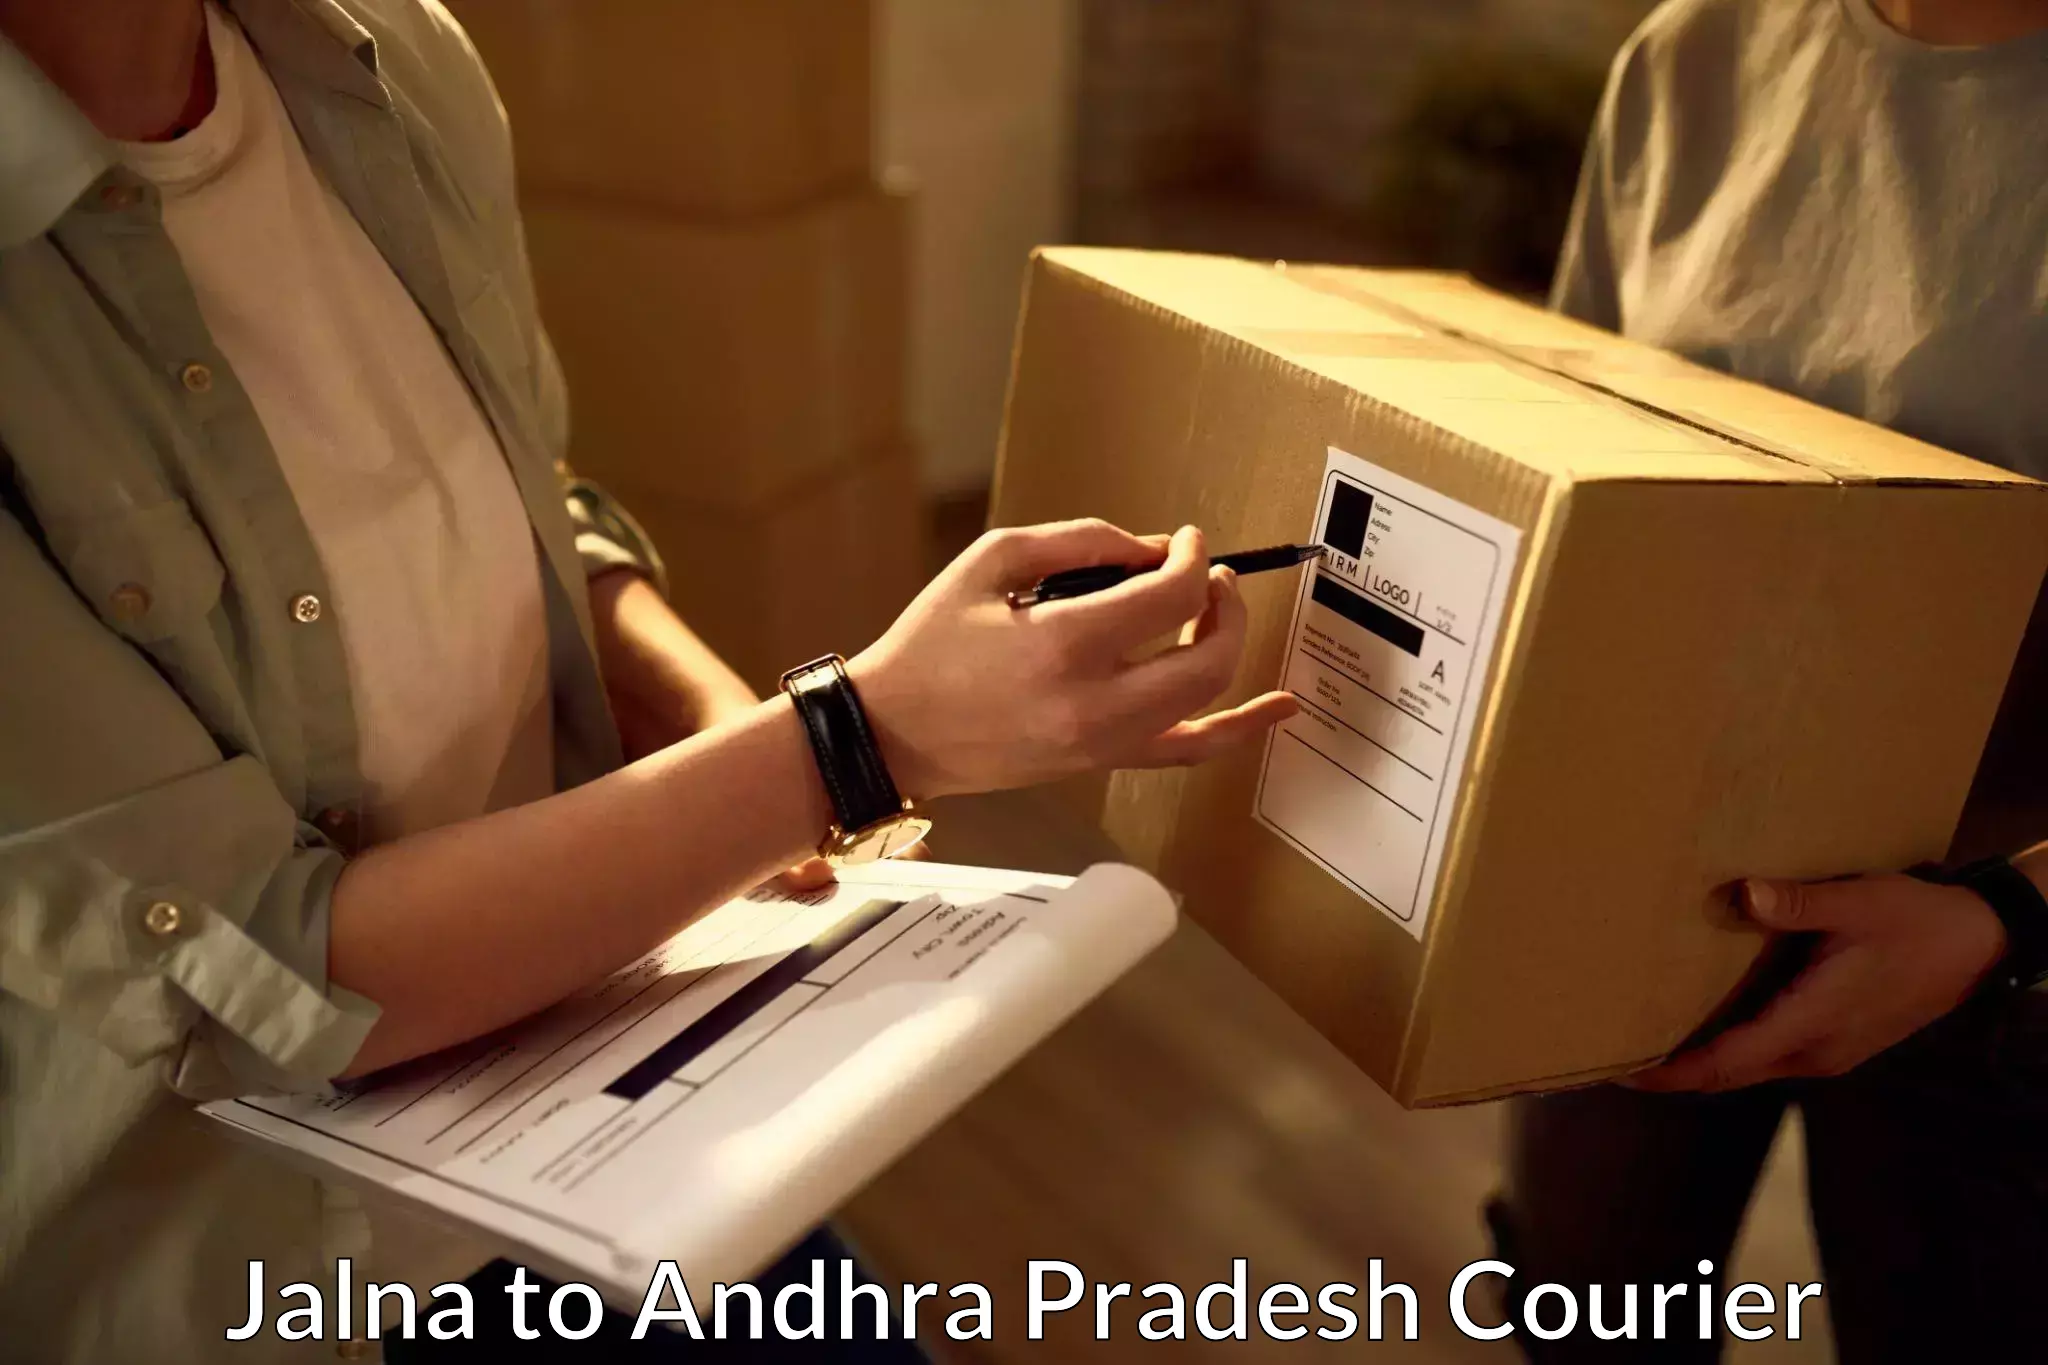 Special handling courier Jalna to Andhra Pradesh